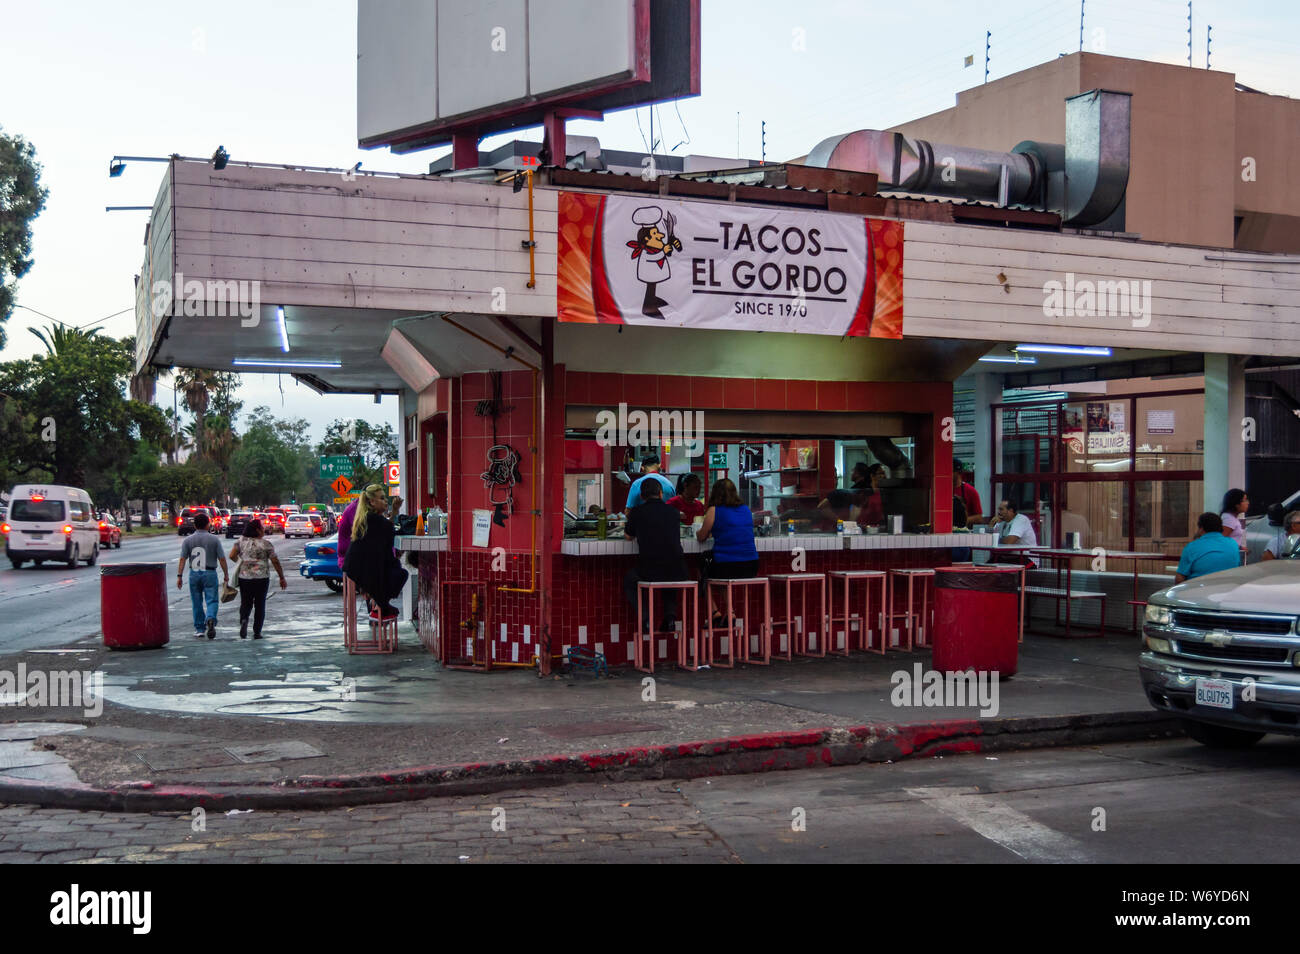 TIJUANA, BAJA CALIFORNIA / MEXICO, JULY 28 2019: Tacos El Gordo, one of Tijuana's famous taco places located in the Zona Rio Stock Photo